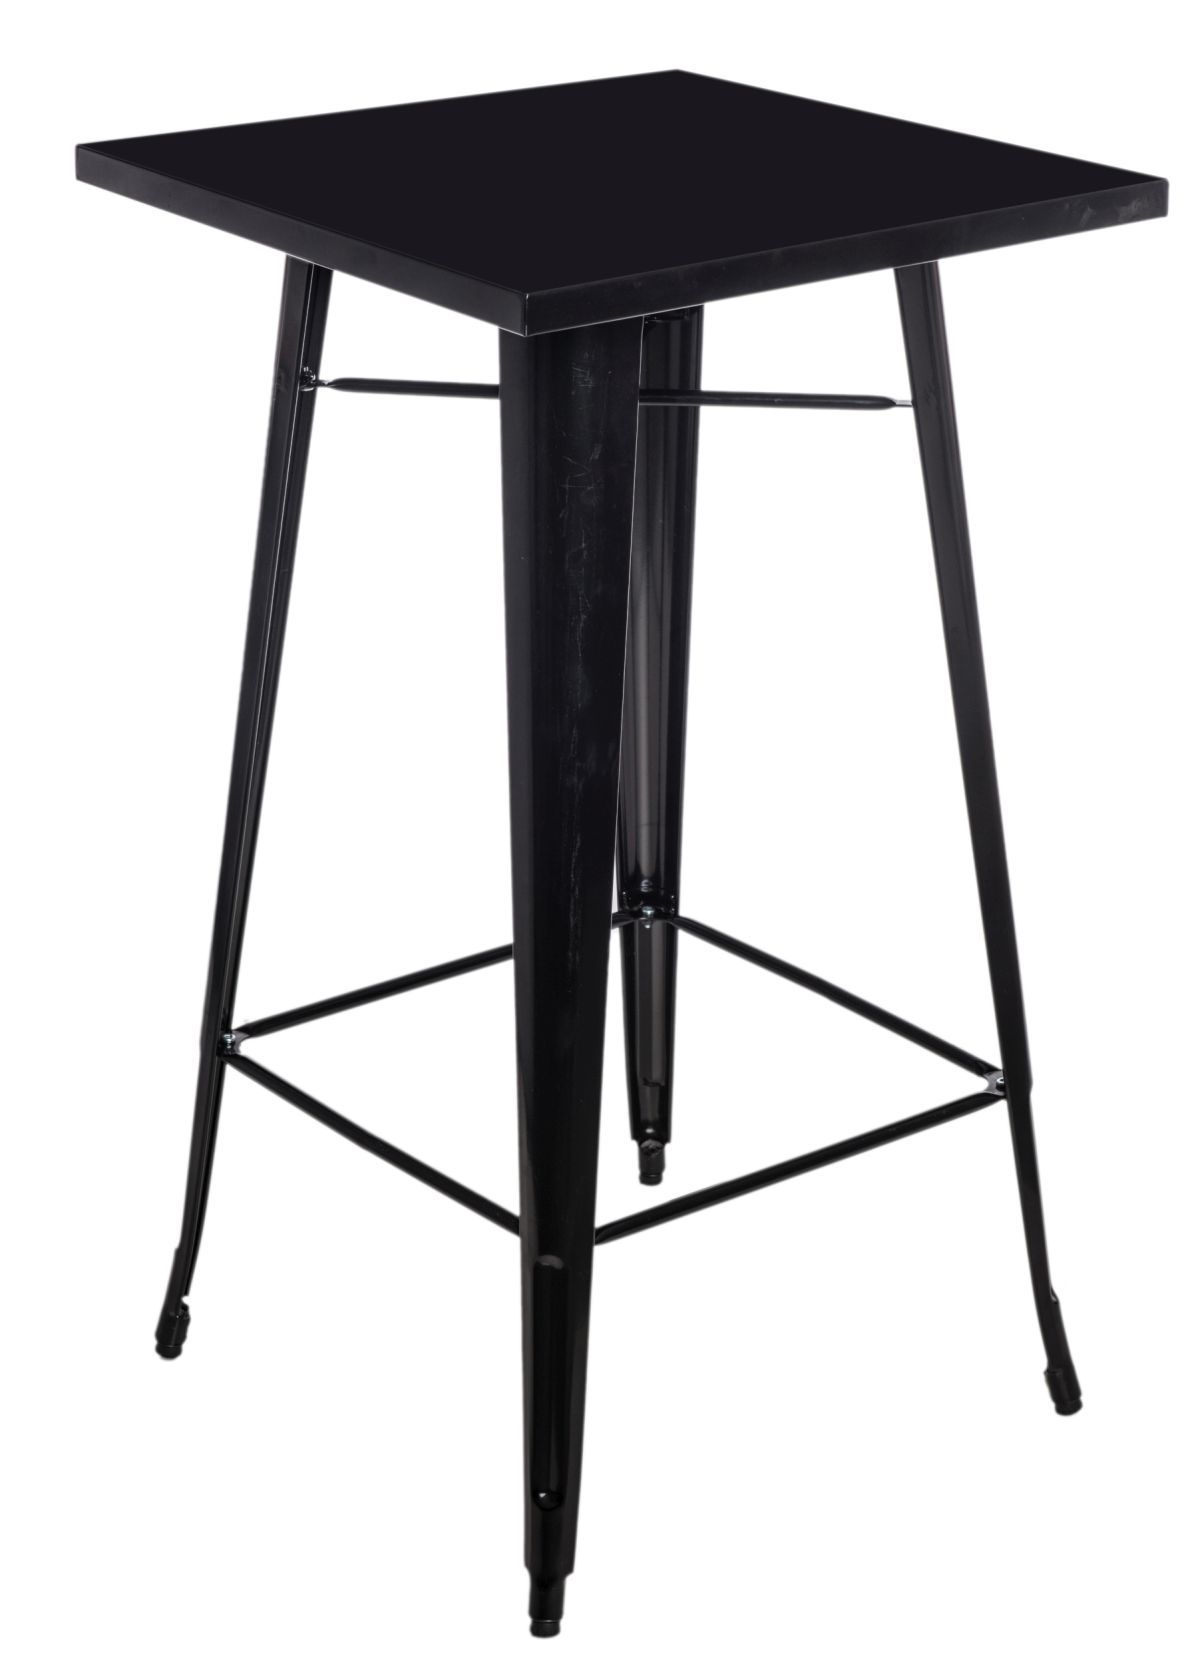  Stôl barový Paris čierny - mobler.sk